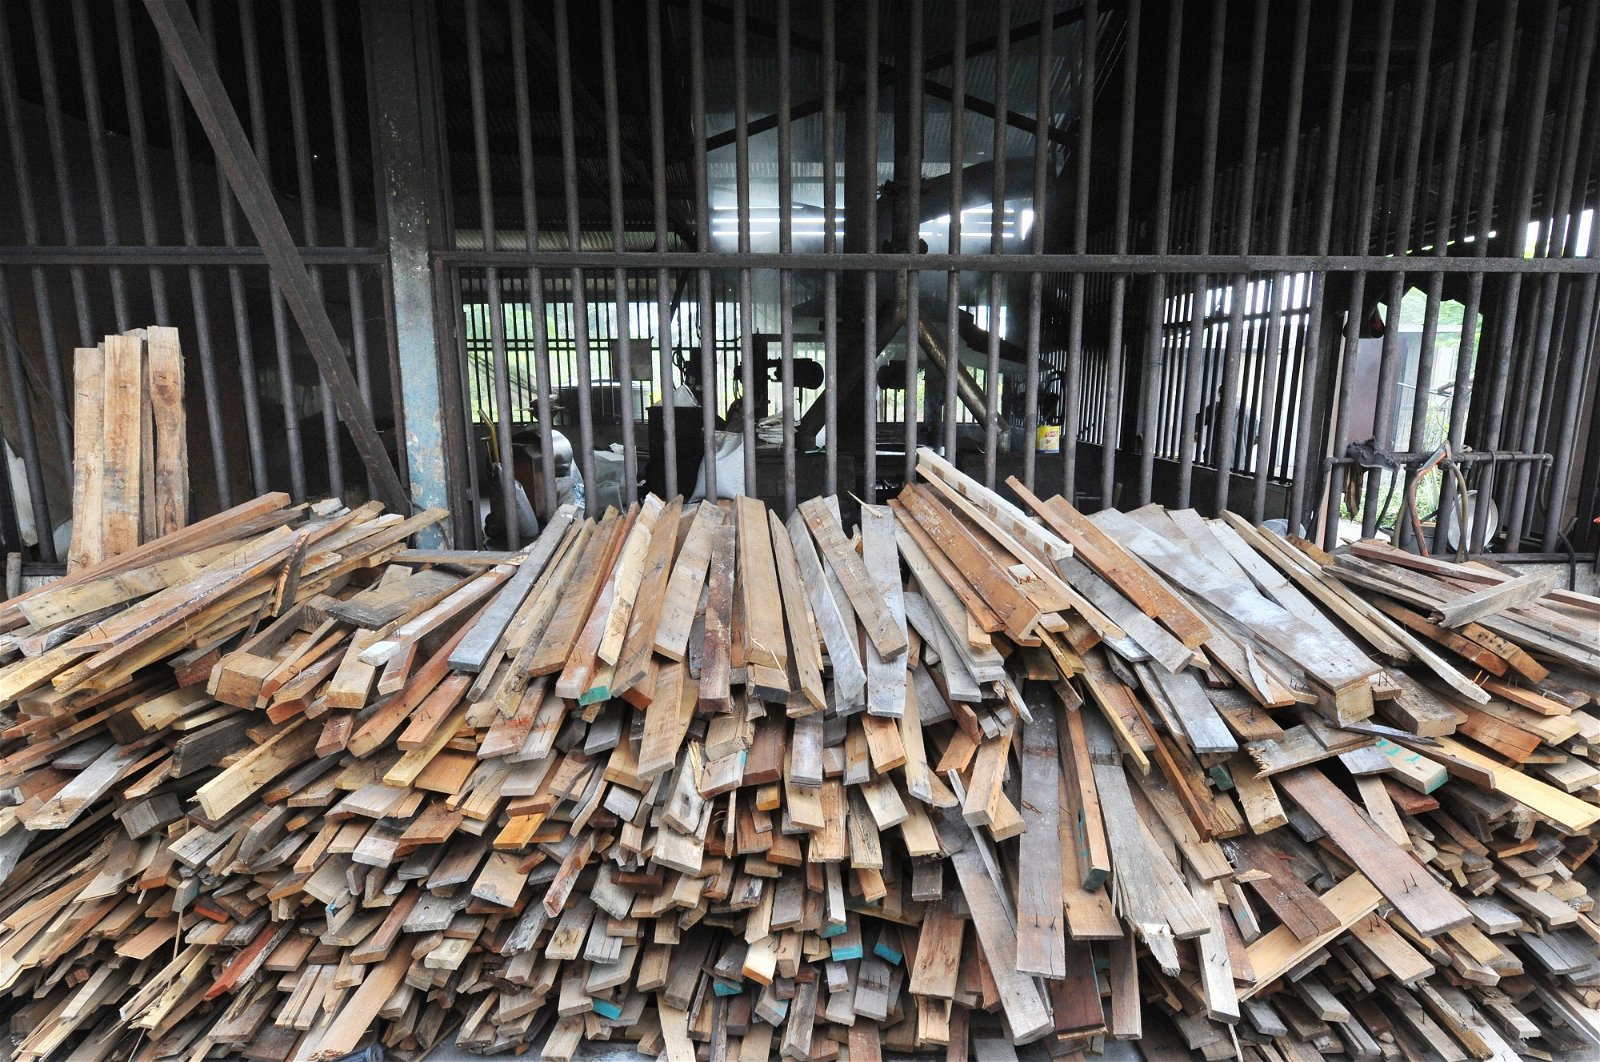 工厂外堆满了从木托盘拆卸下来的木头，陈焕达谓，由于原木的售价渐涨，目前以木托盘取代。